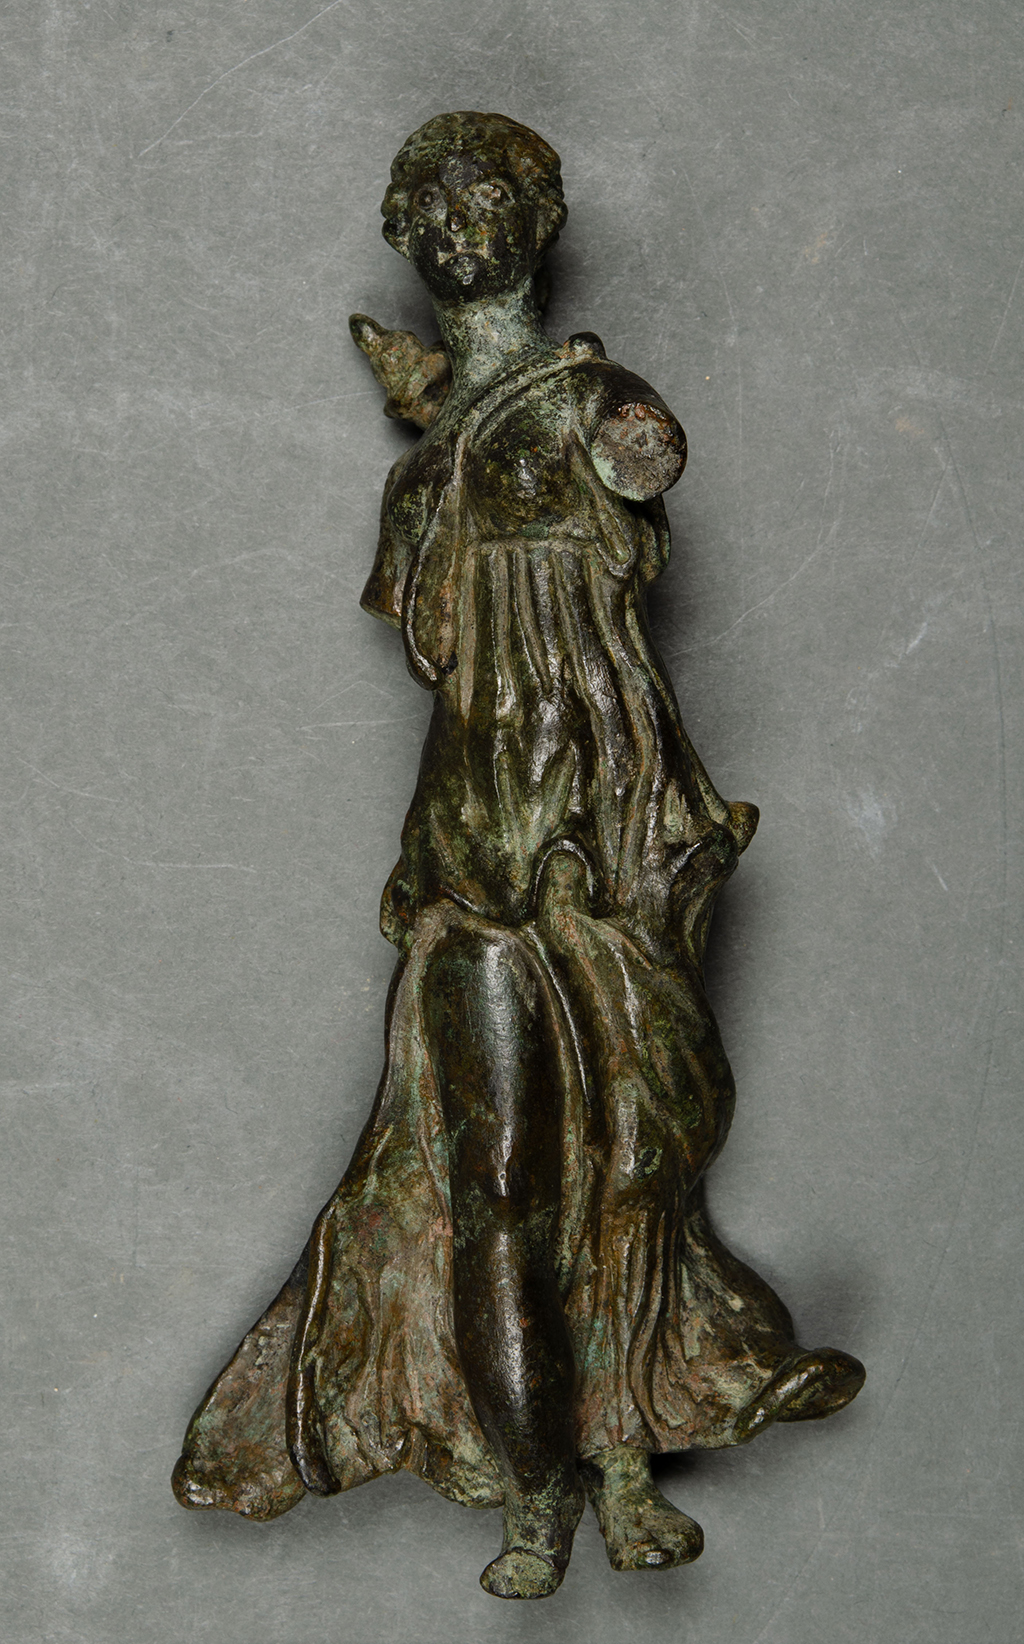 A copper alloy figurine.